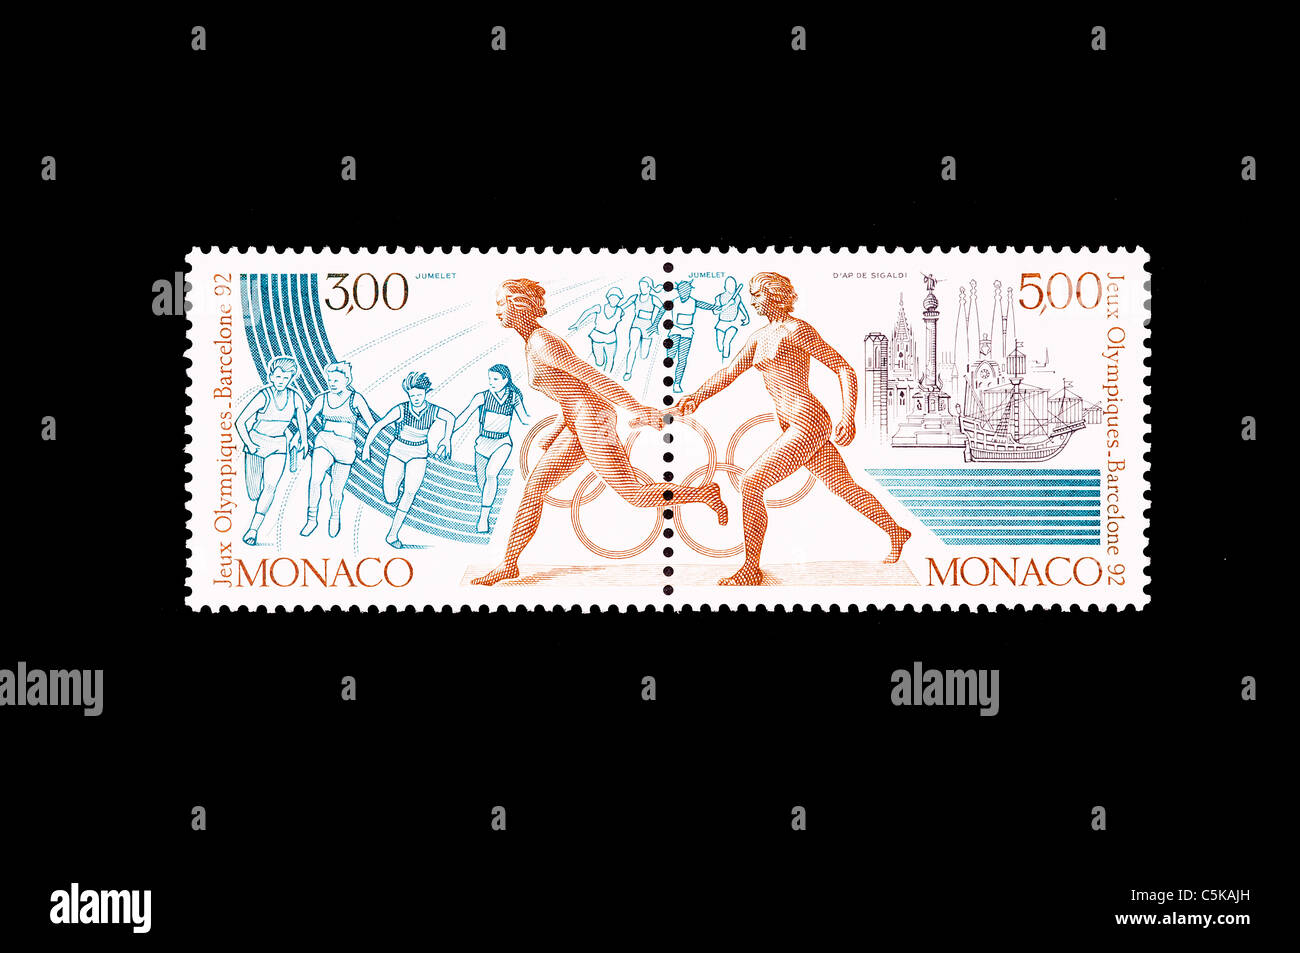 La course de relais de la discipline dans un timbre commémoratif de l'occasion des Jeux olympiques de Barcelone 1992 Banque D'Images